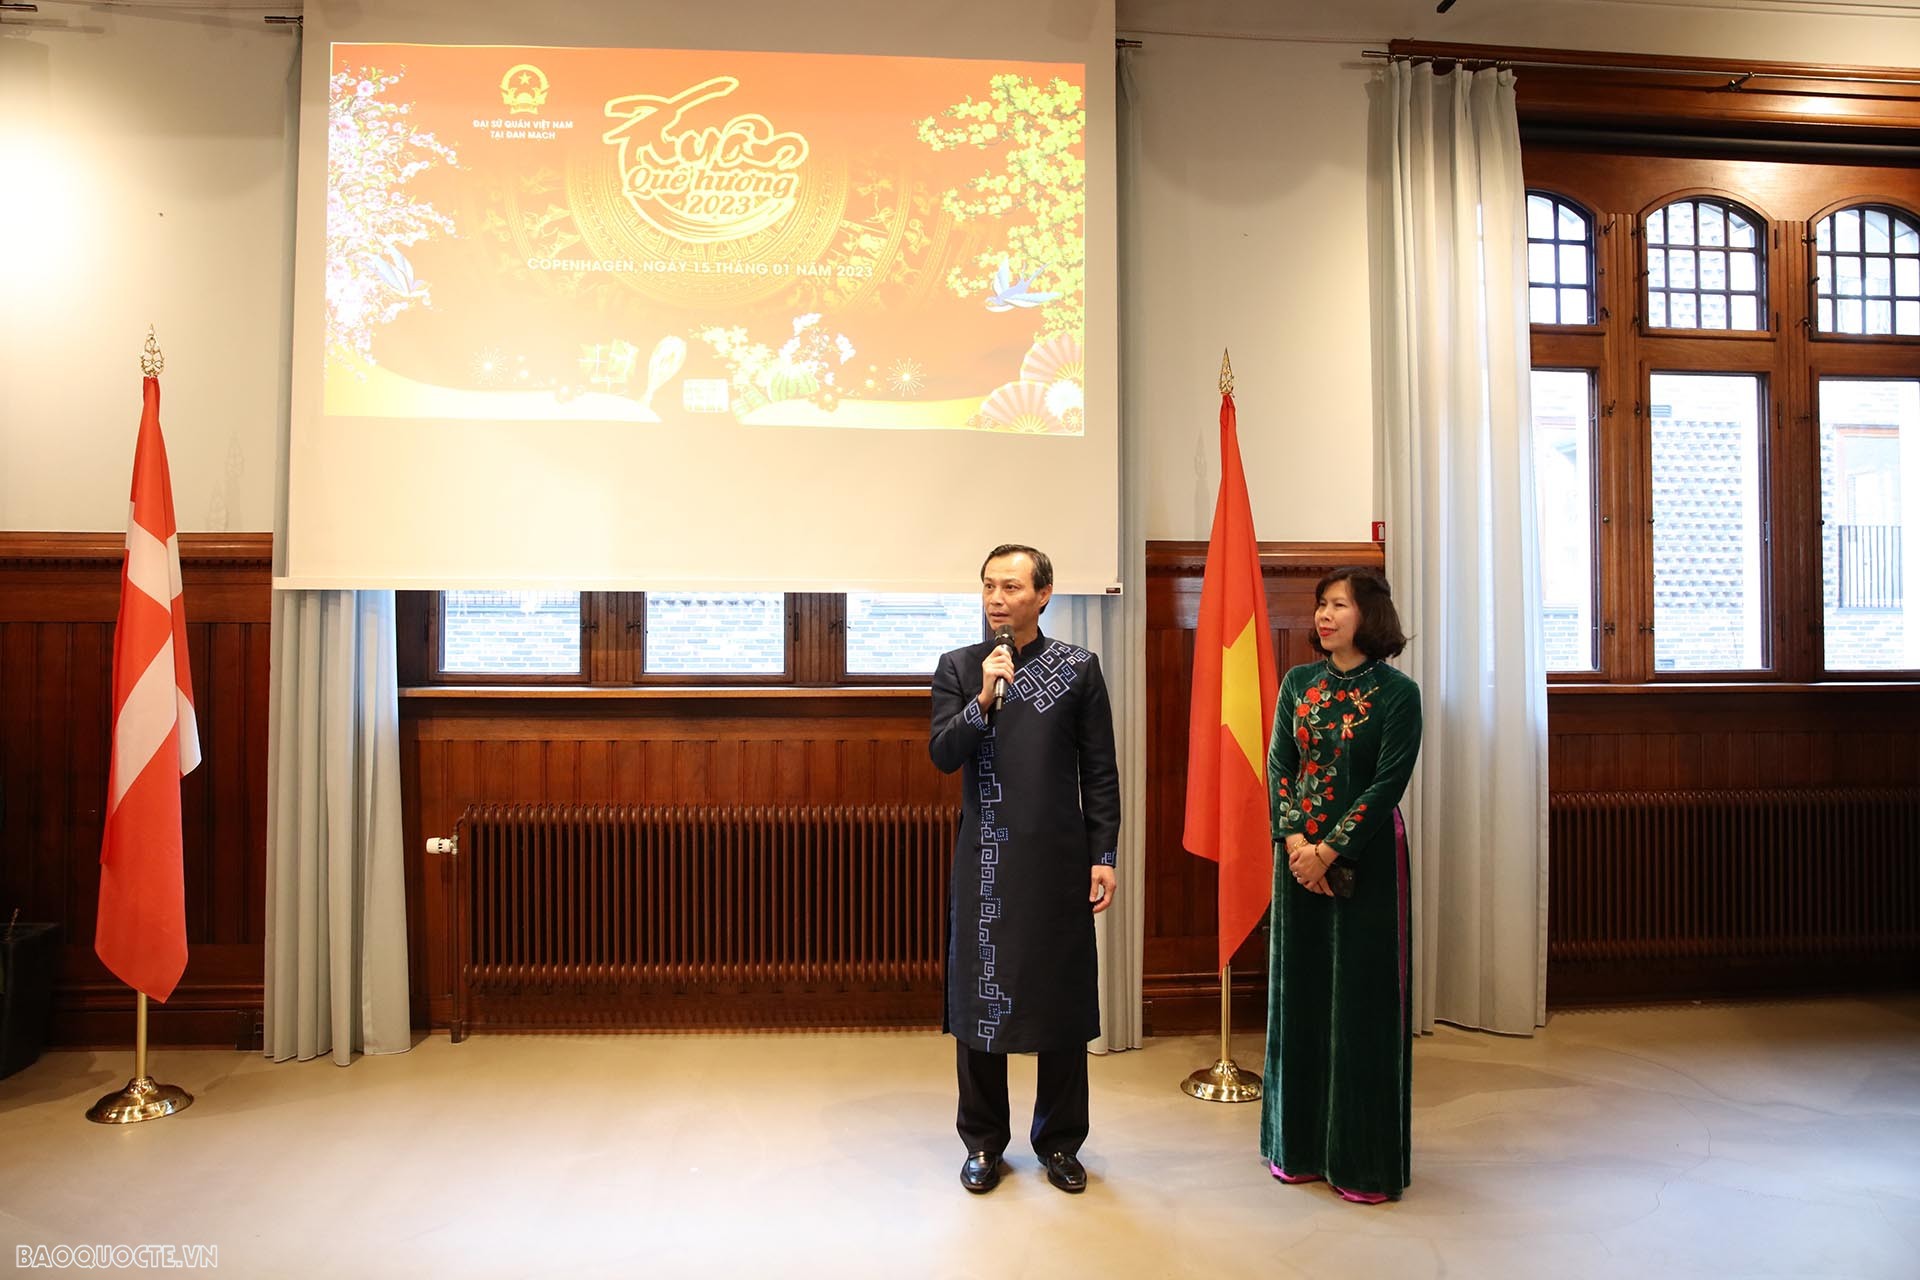 Đại sứ Lương Thanh Nghị phát biểu chúc Tết bà con tại chương trình Xuân Quê hương 2023 dành cho bà con người Việt tại Đan Mạch.